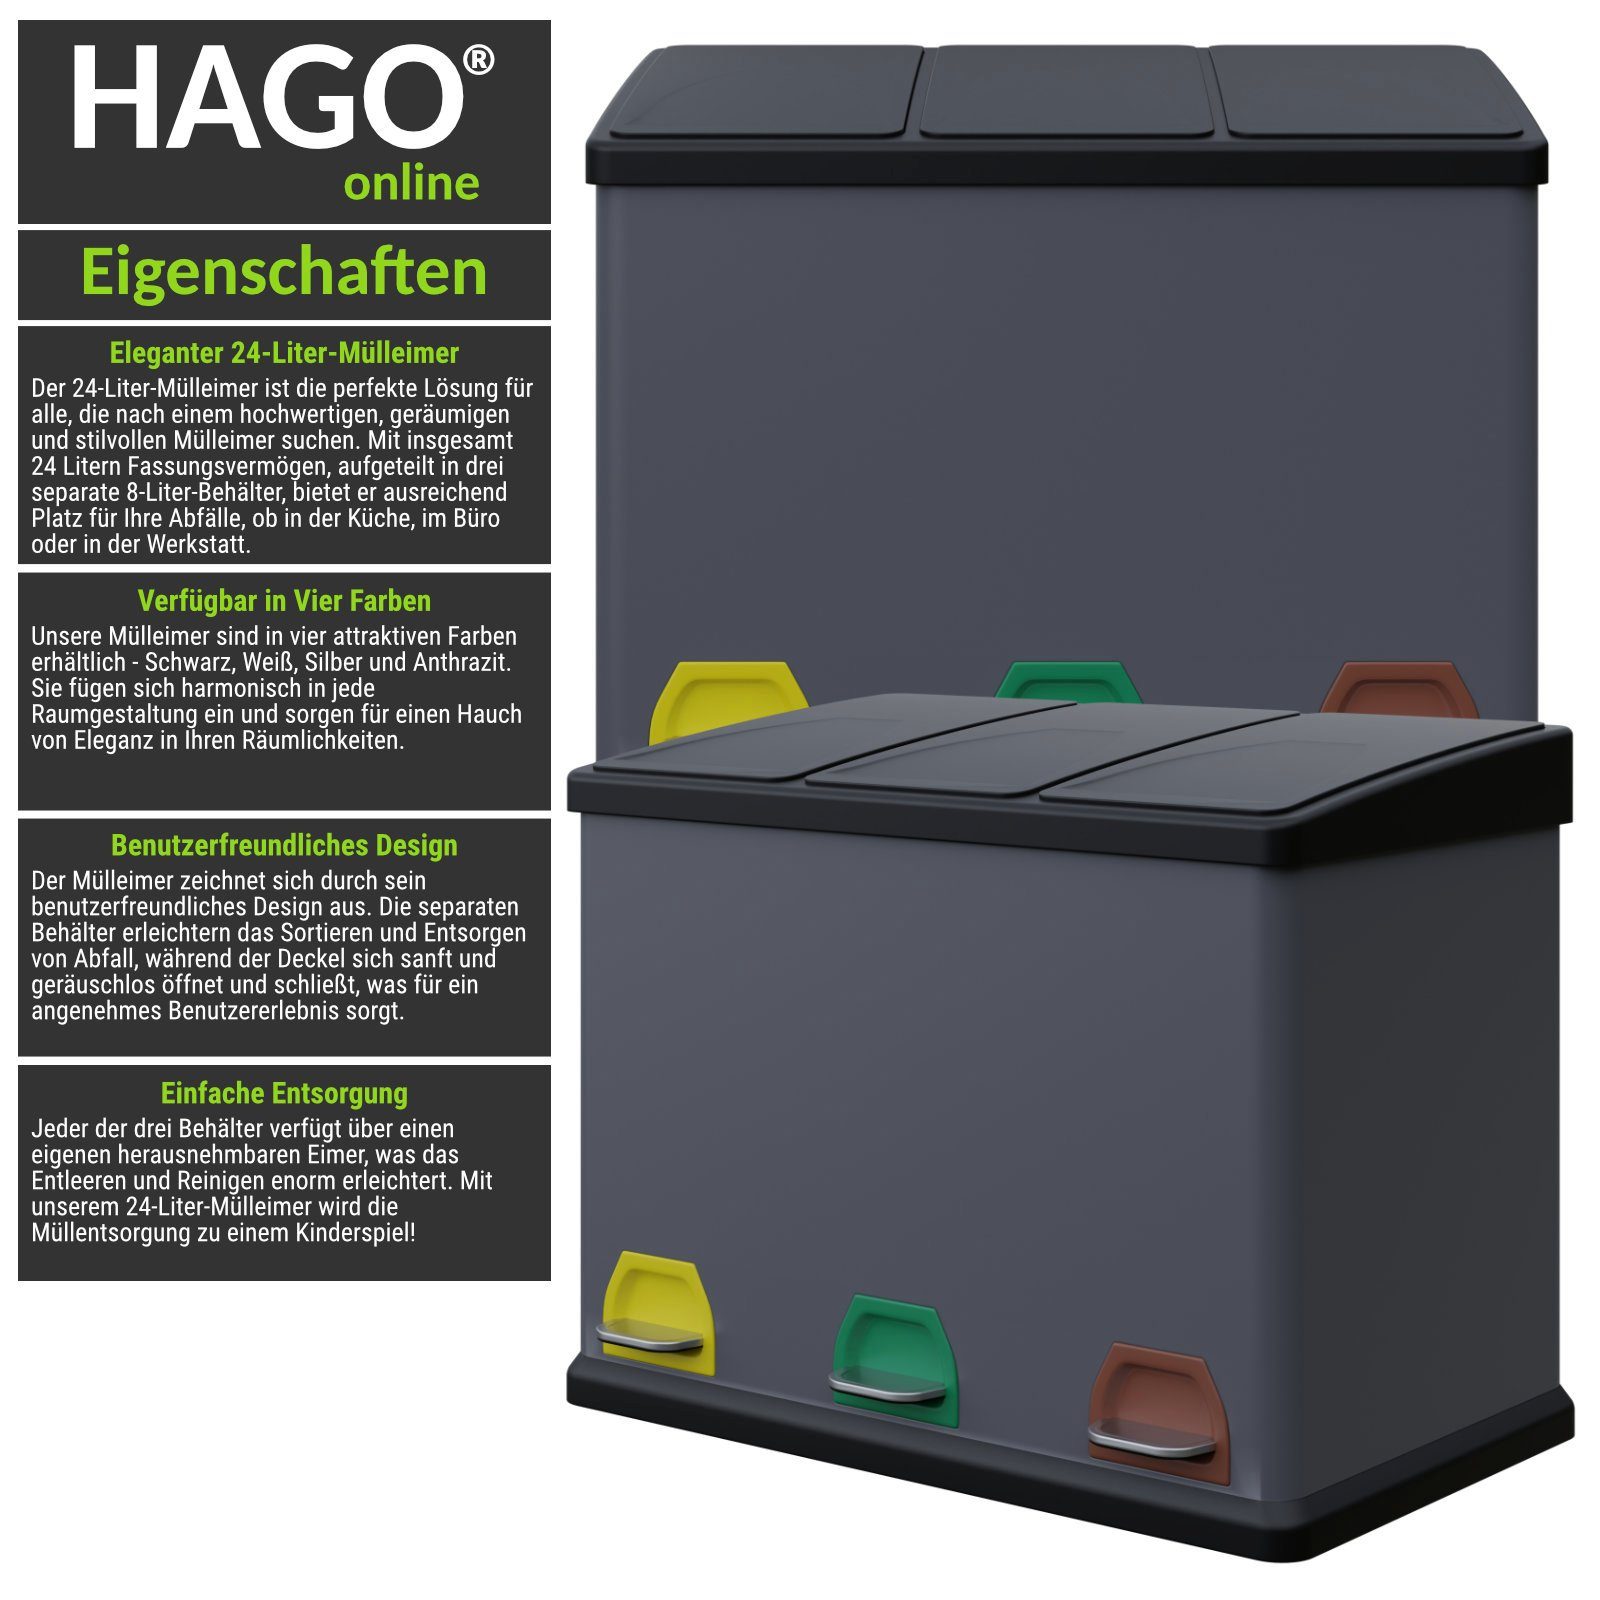 HAGO Mülltrennsystem Premium Mülleimer Trennsystem Abfallbehälter Abfalleimer Mülltrenner anthrazit